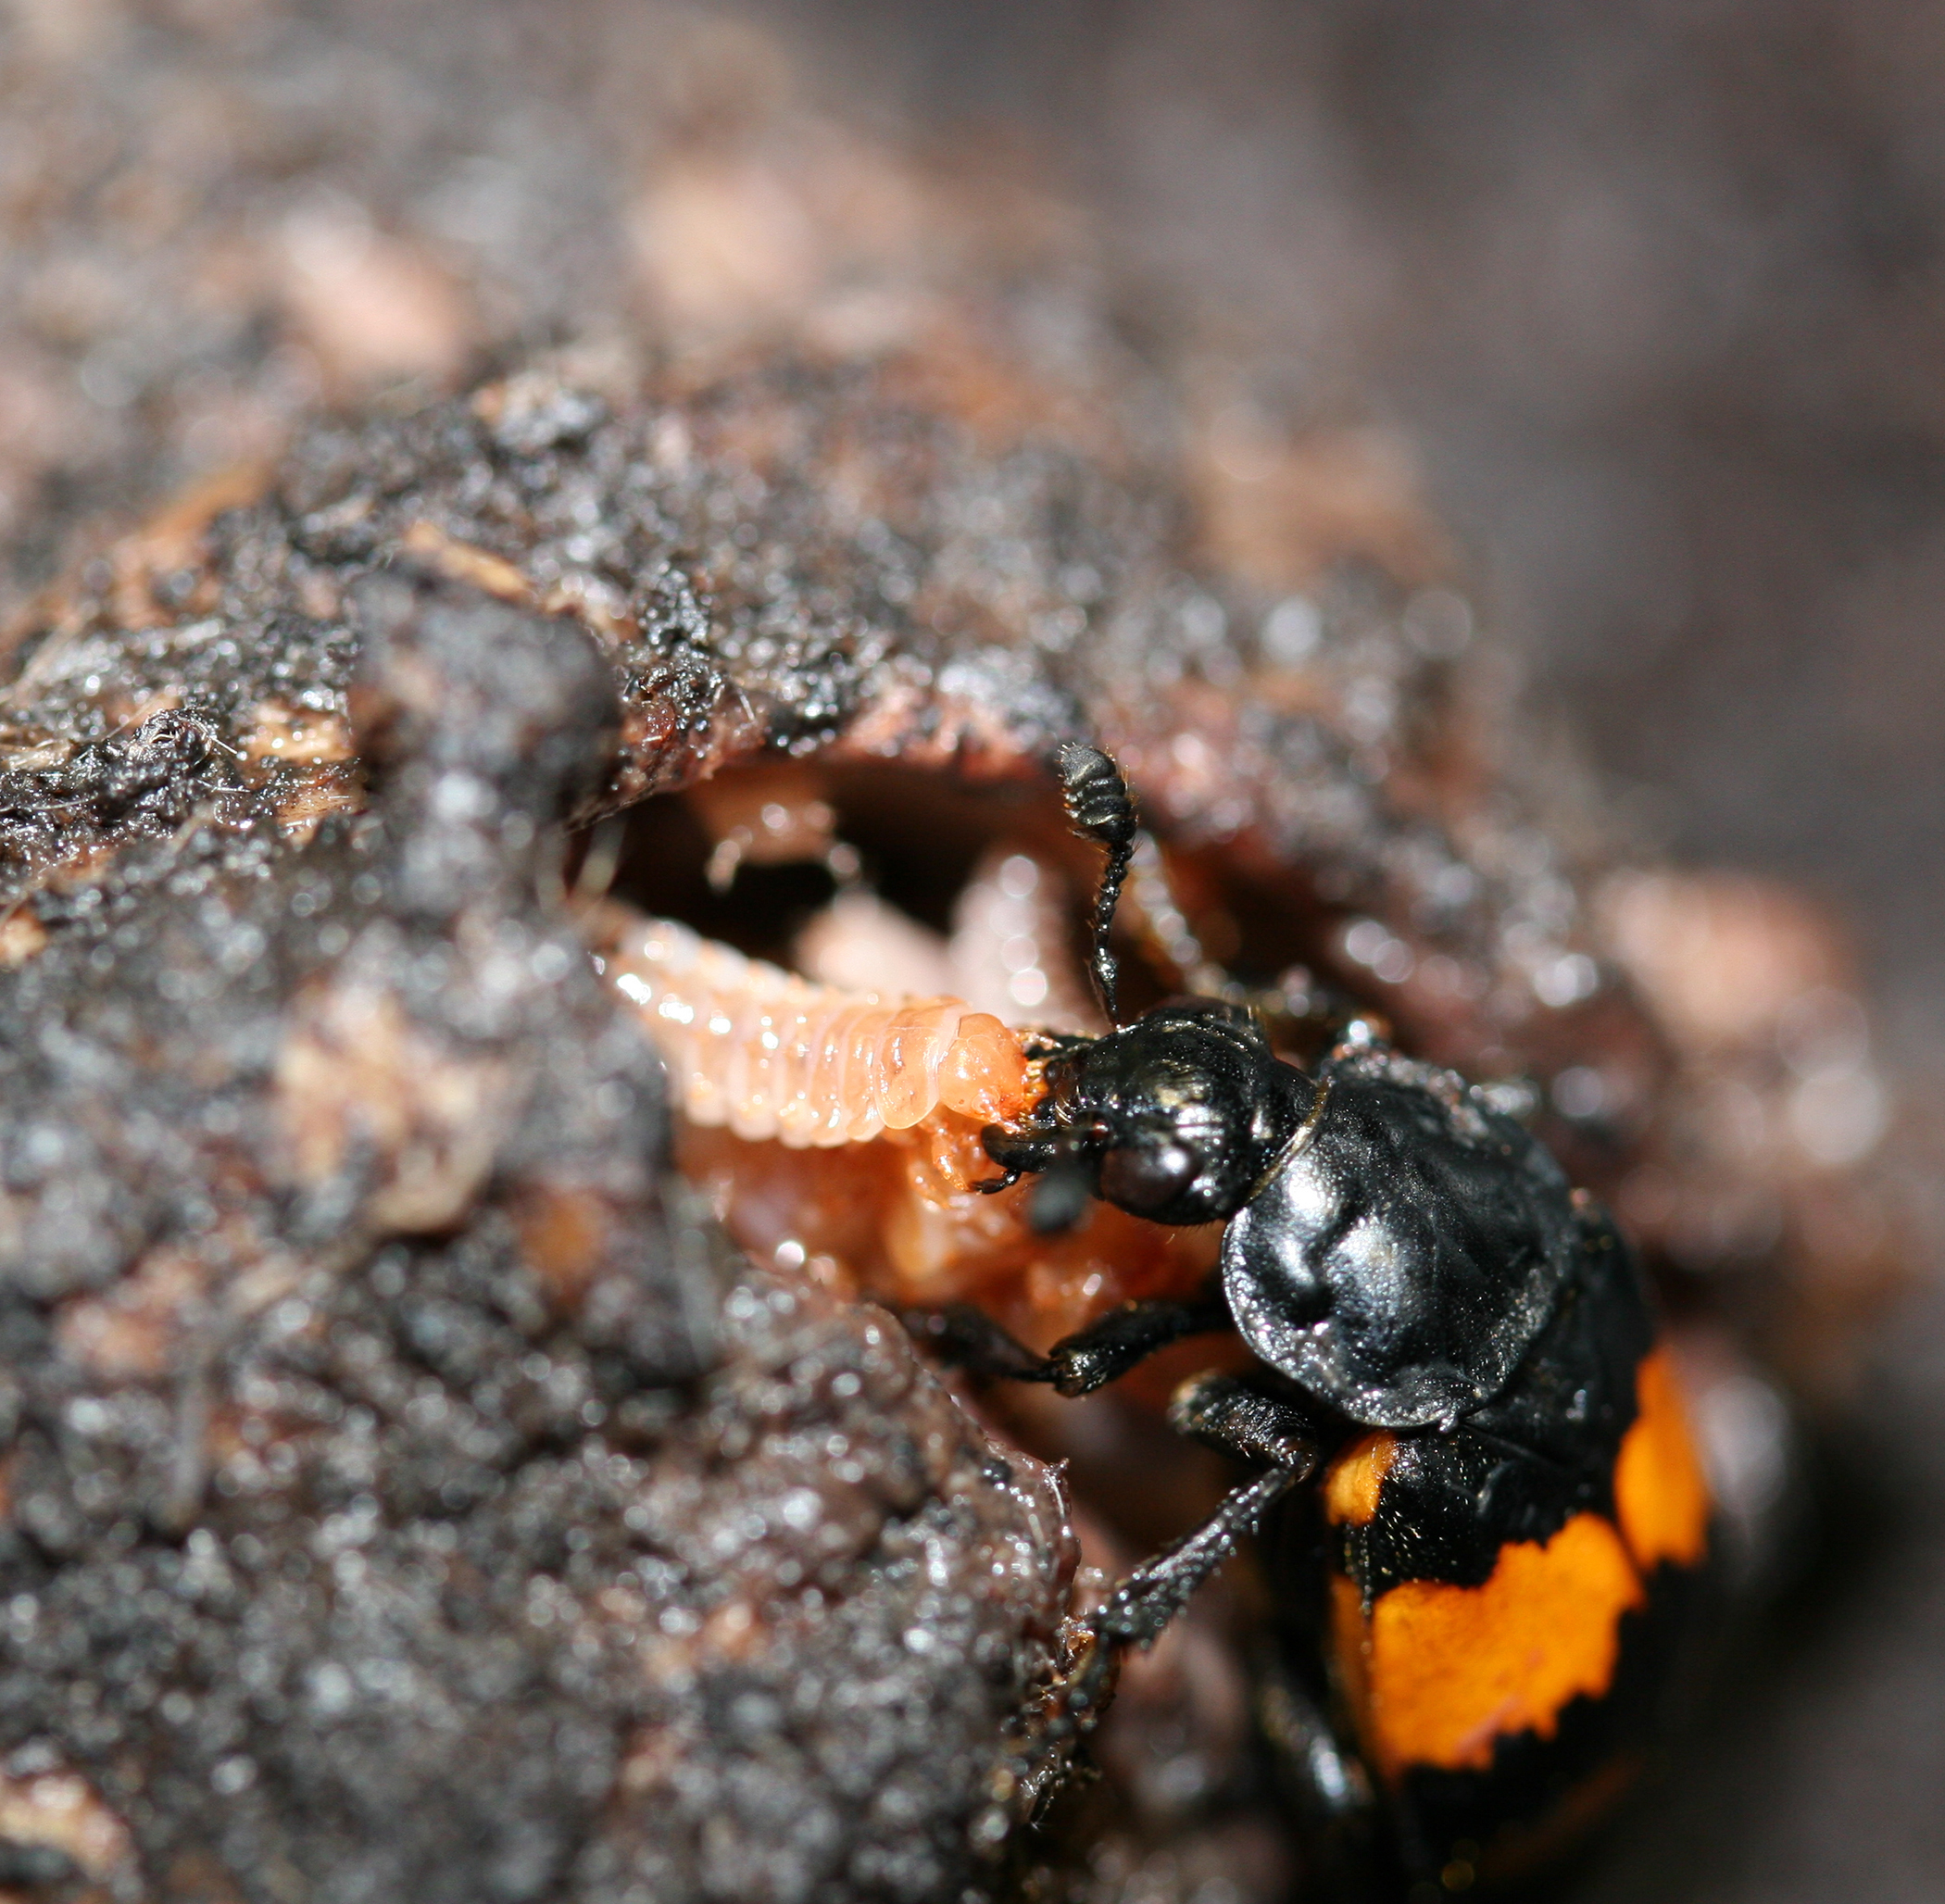 Burying beetle feeding its young